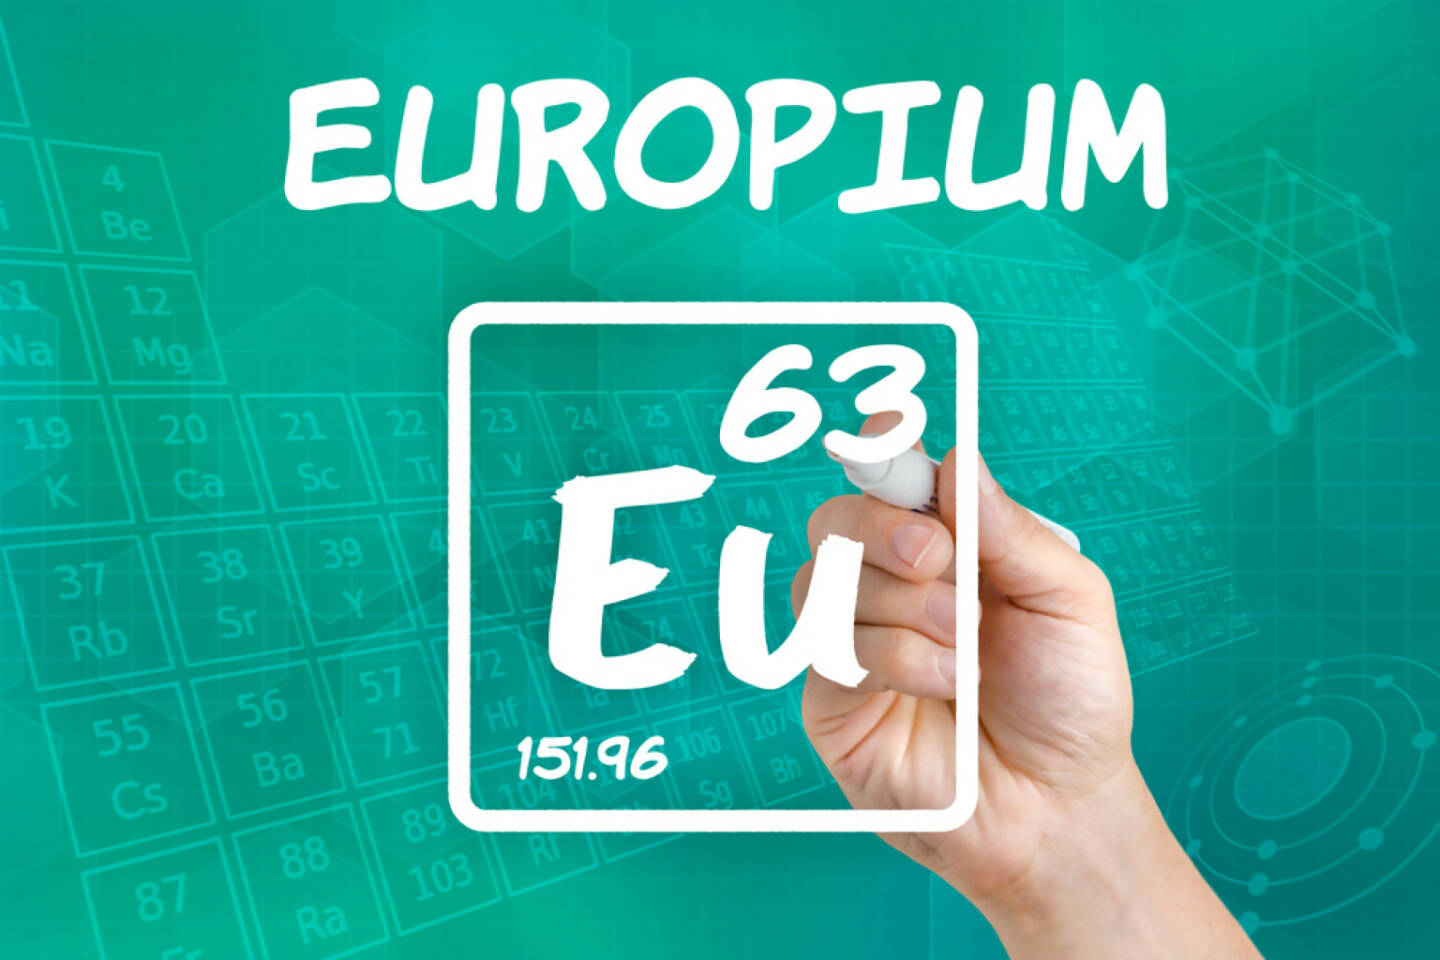 Europium, Seltene Erden, Metall, http://www.shutterstock.com/de/pic-152211170/stock-photo-symbol-for-the-chemical-element-europium.html